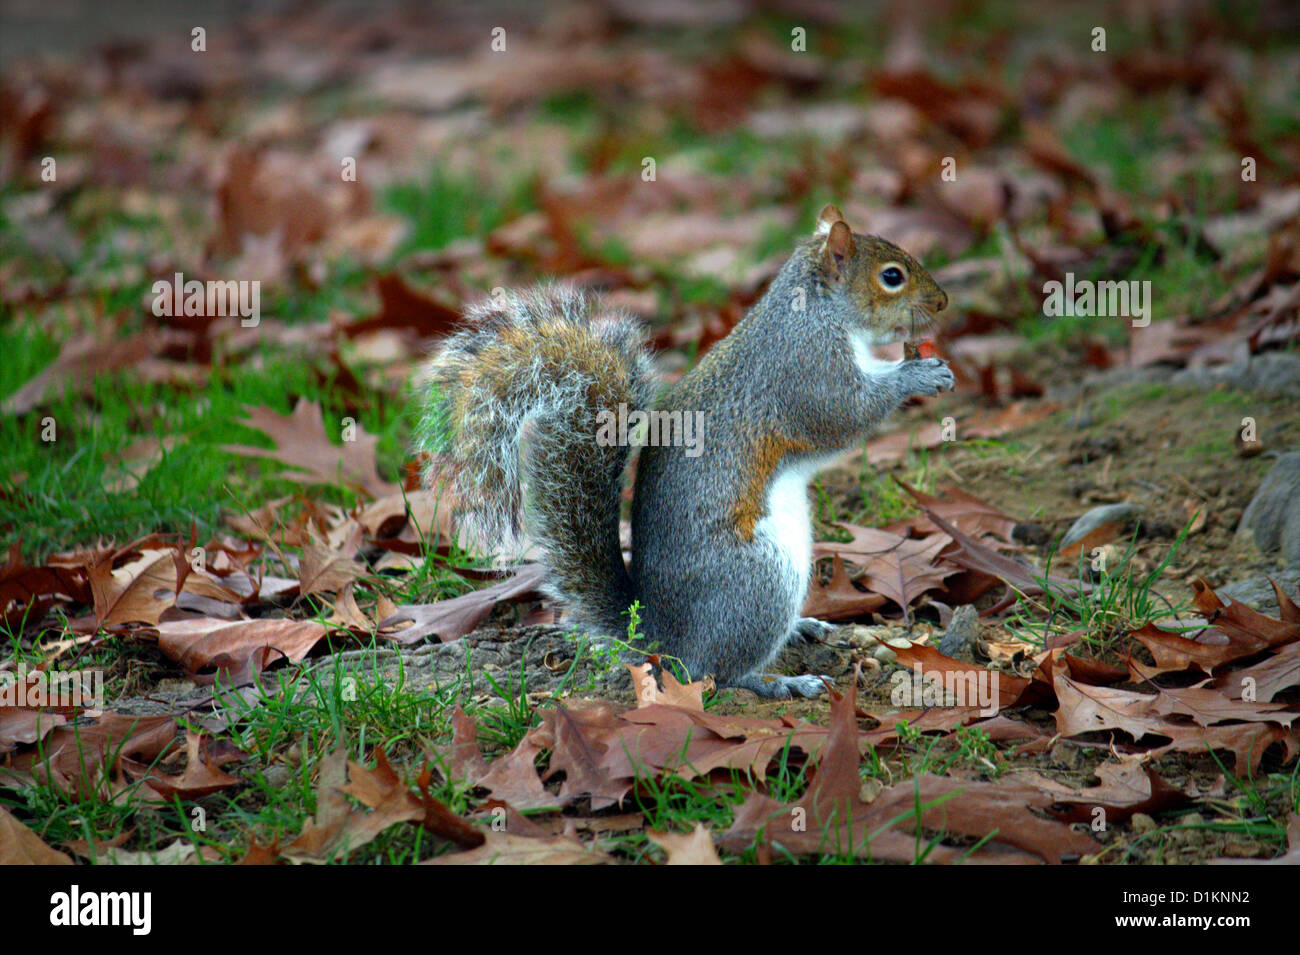 Squirrel nut manger au milieu de sa pelouse couverte de feuilles(Scoiattolo che mangia la noce dans un ricoperto foglie di Prato) Banque D'Images